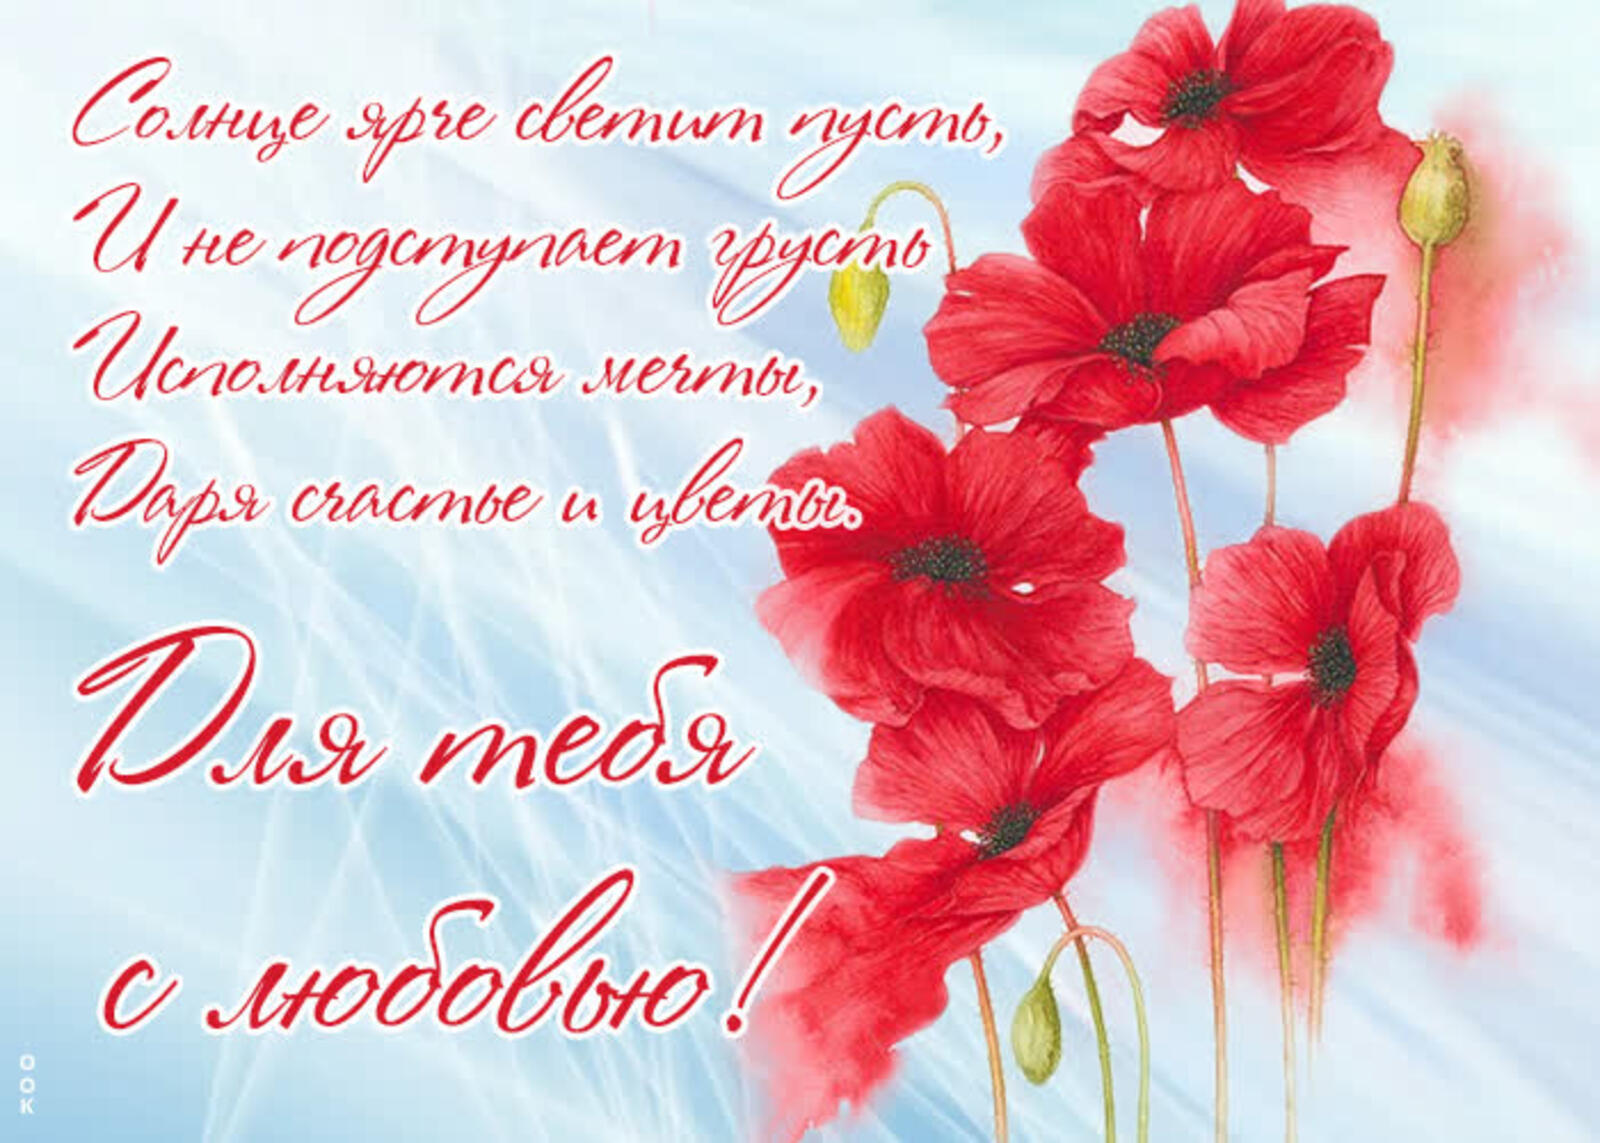 一张以特别是对你的爱 鲜花 红花为主题的明信片